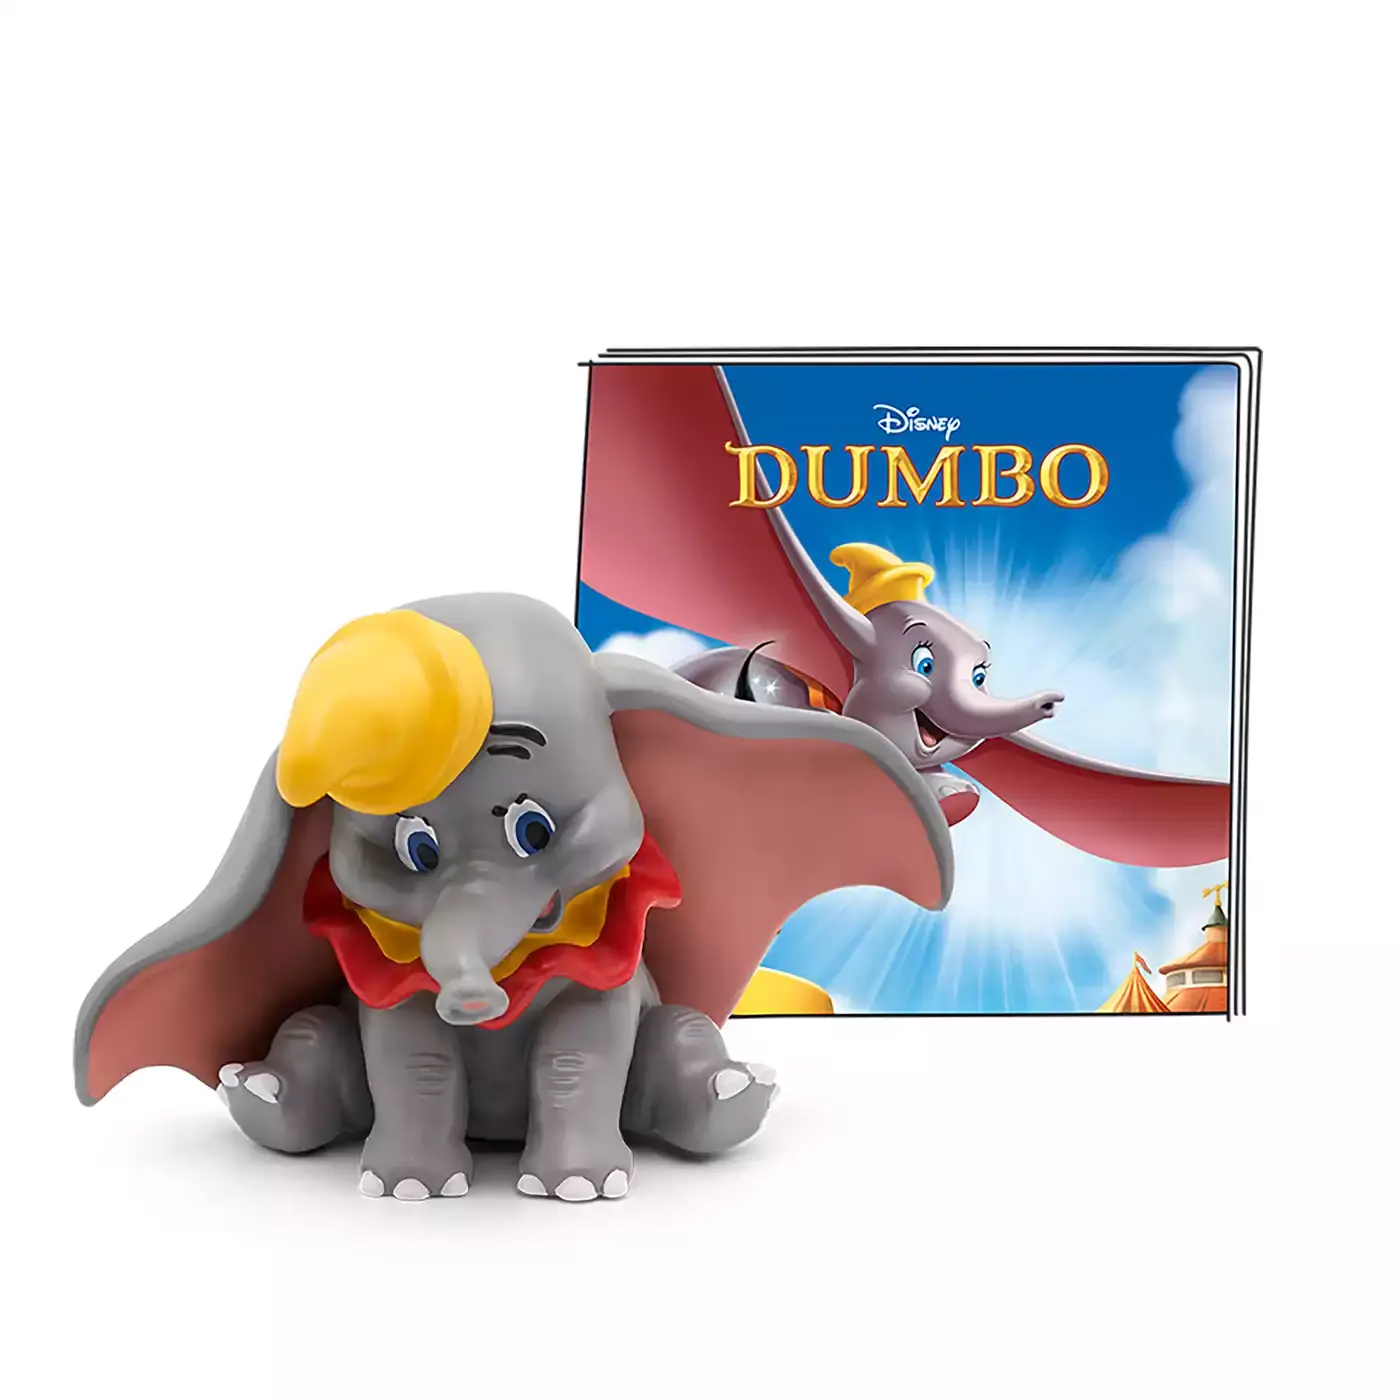 Disney - Dumbo tonies 2000577942602 3